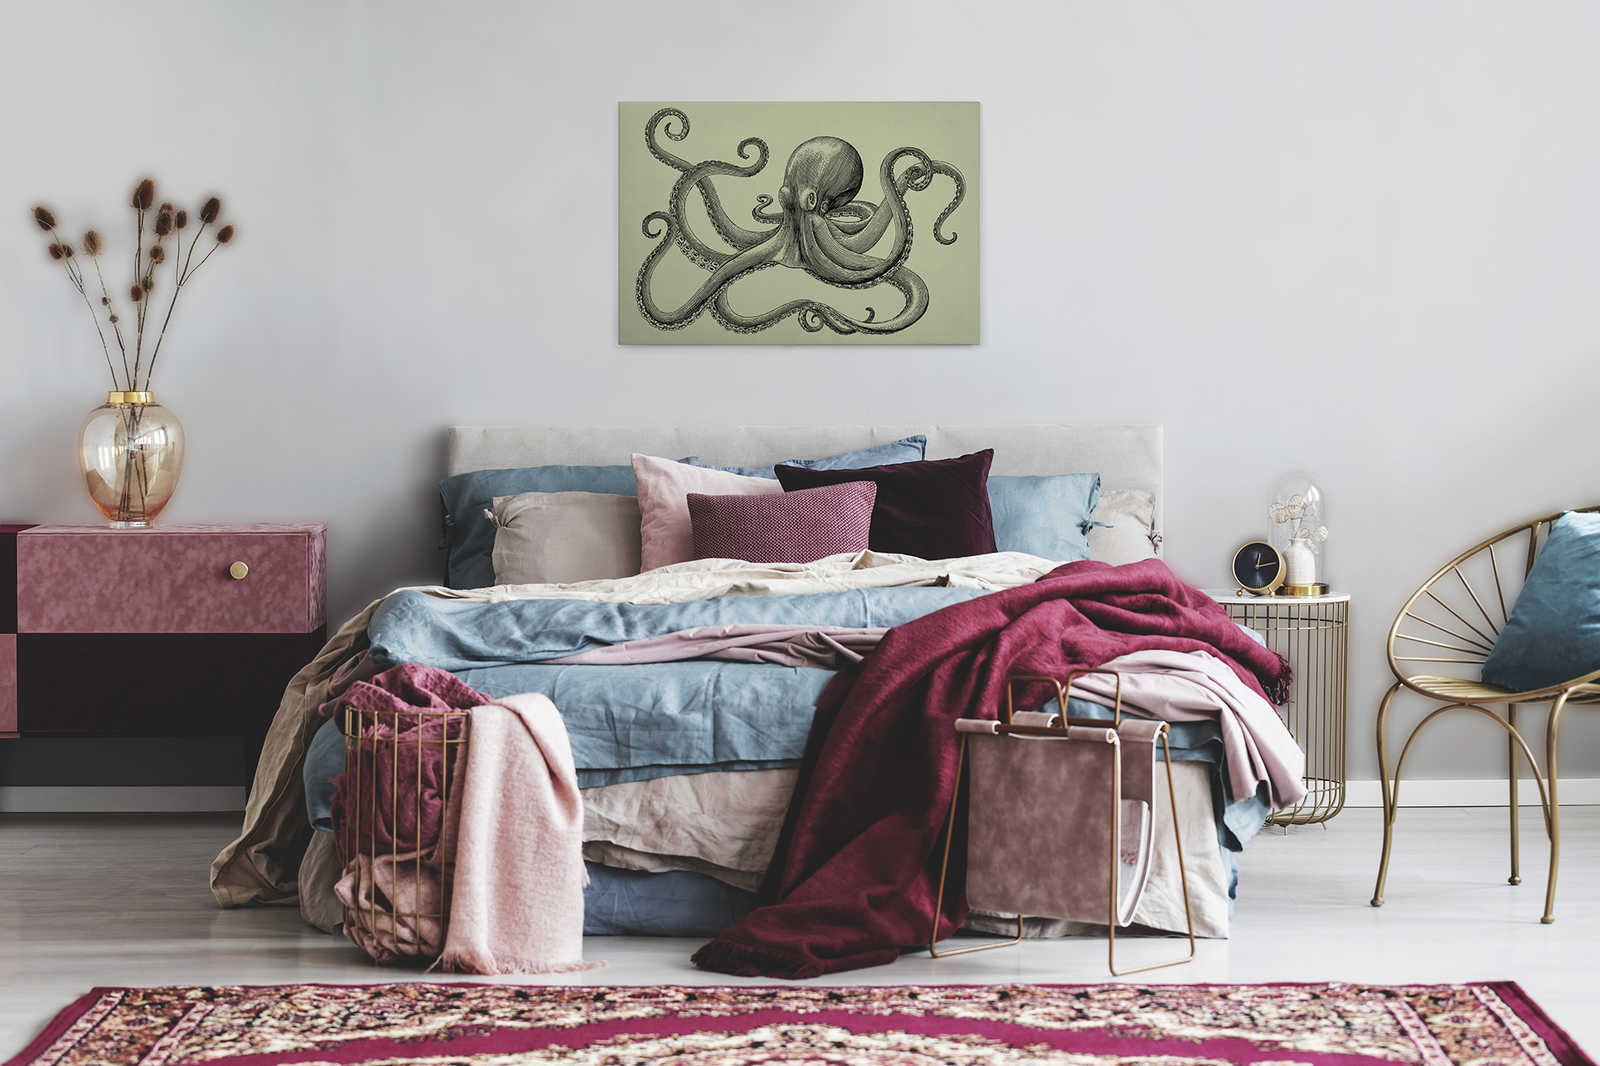             Jules 3 - Canvas schilderij Octopus in schetsstijl & vintage look - Kartonnen structuur - 0.90 m x 0.60 m
        